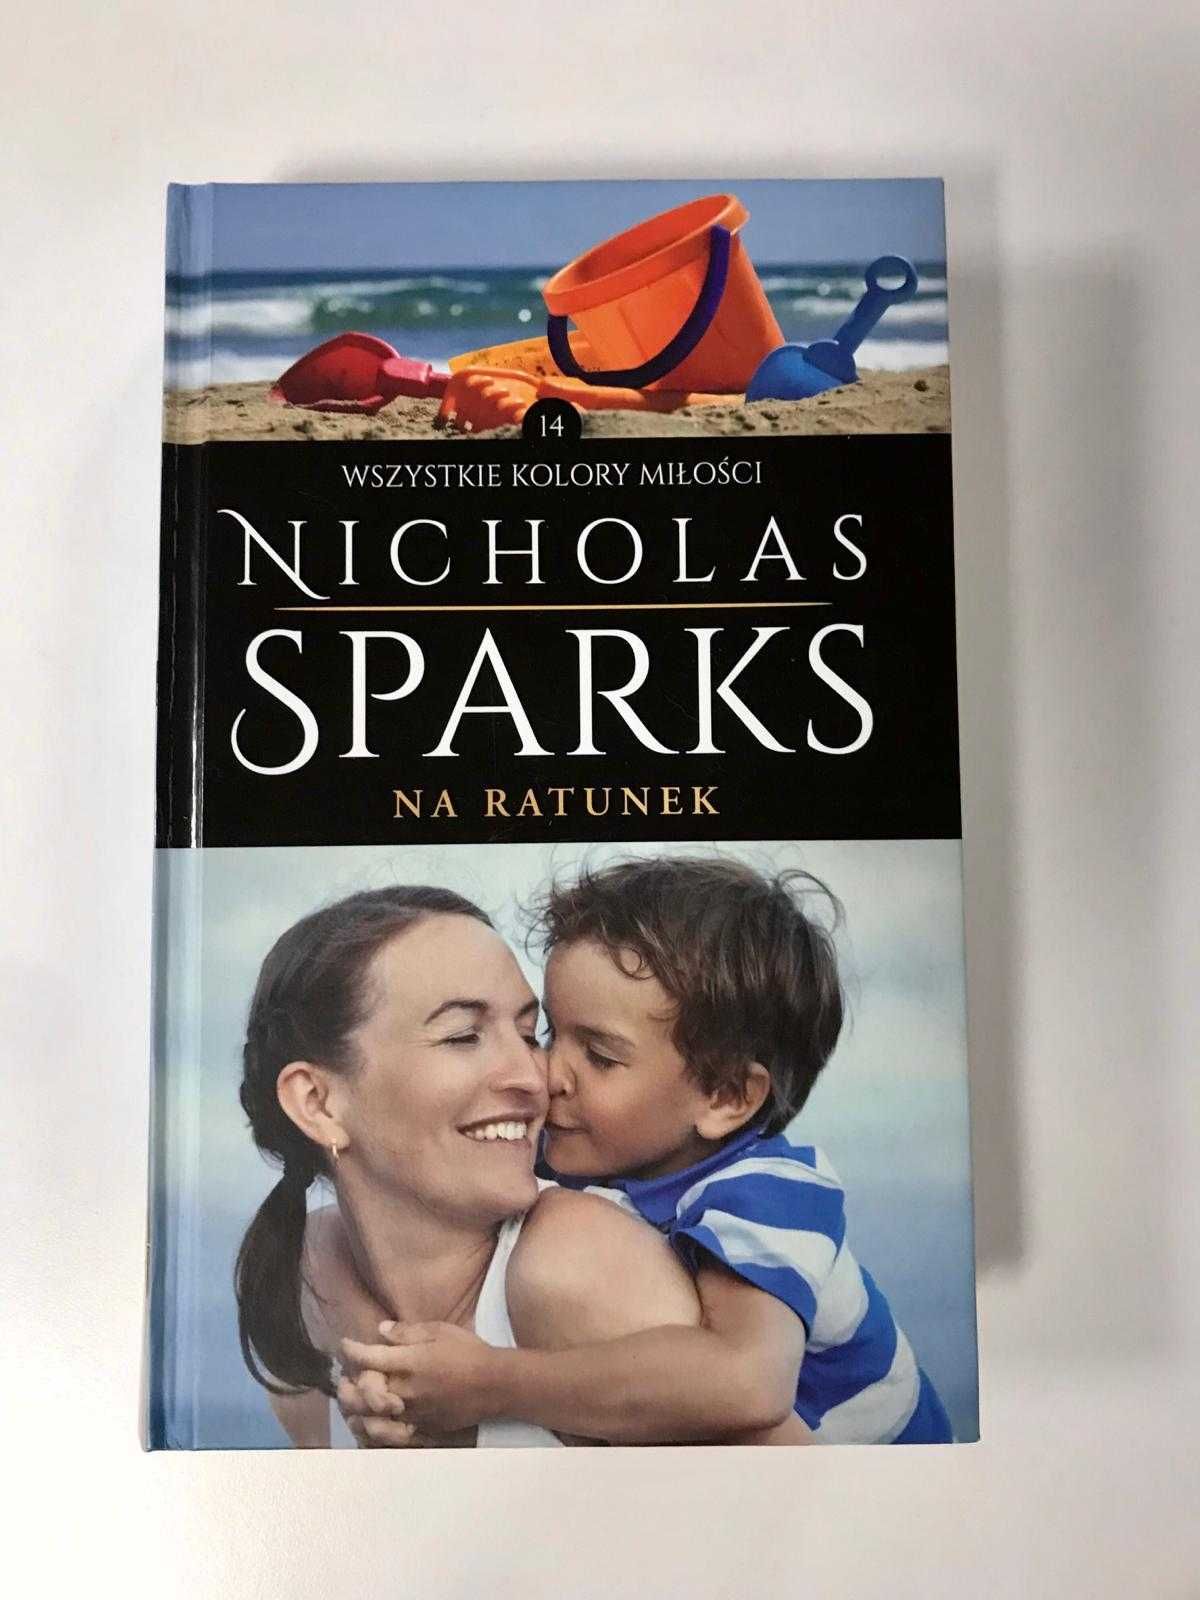 "Na ratunek" - Nicholas Sparks Wszystkie kolory miłości kolekcja!